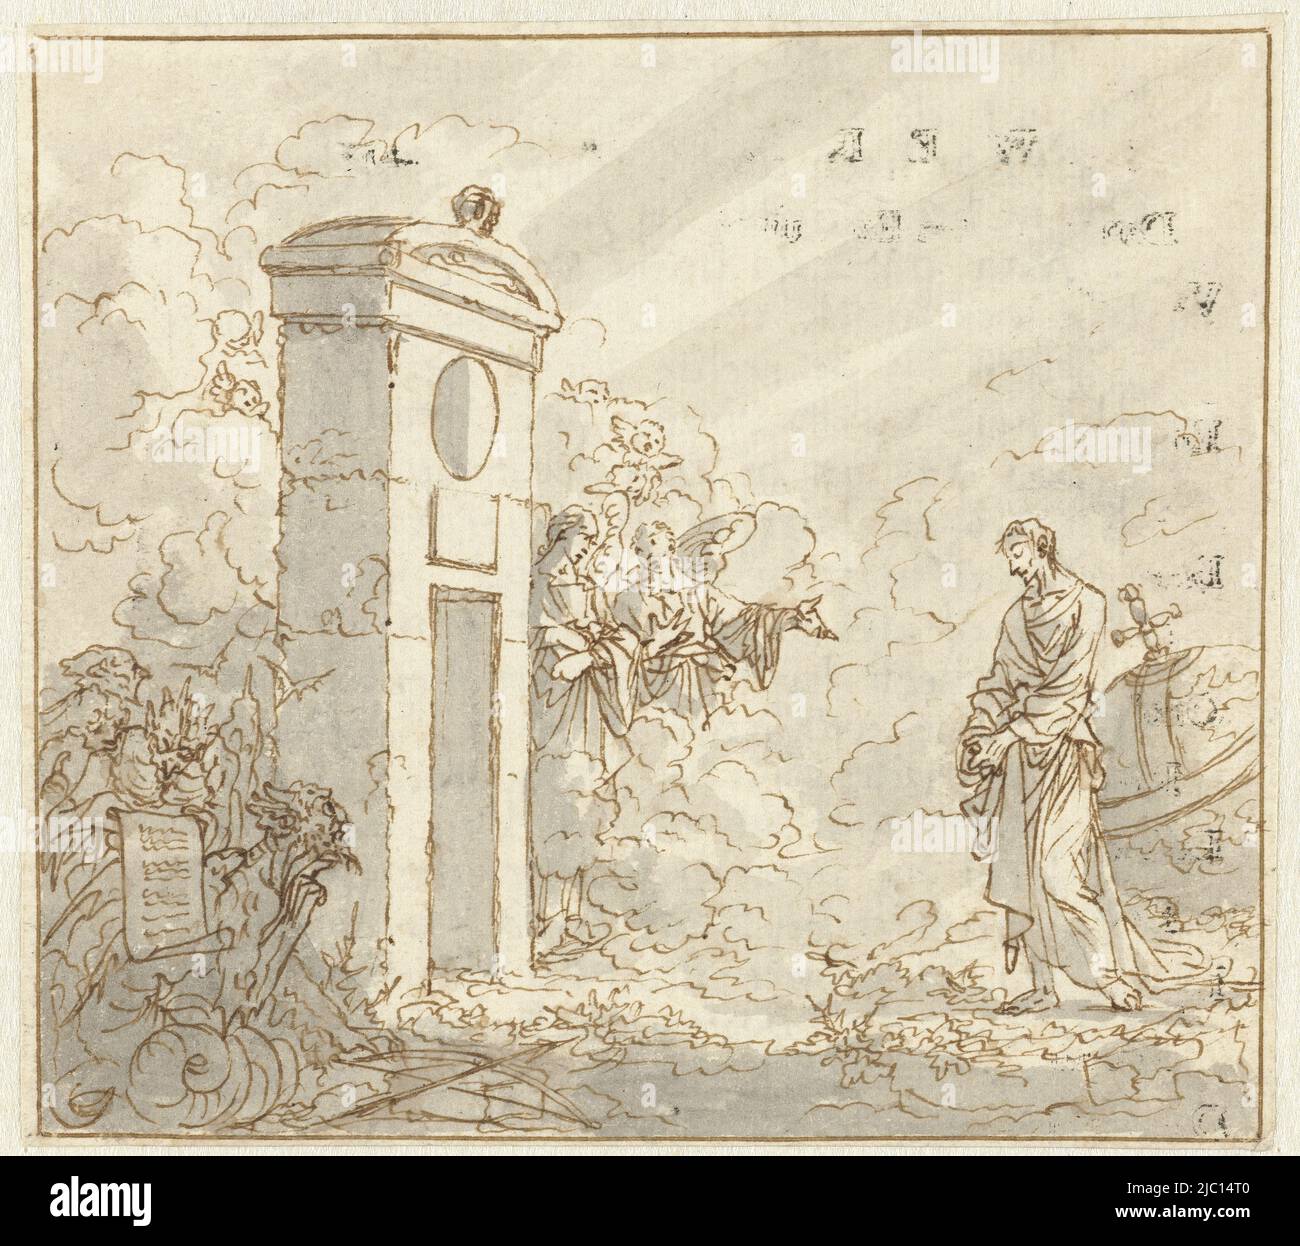 Design for a print, The Gate of Heaven the Unworthy World (titre de la série), dessinateur: Jan Luyken, 1708 - 1710, papier, stylo, brosse, h 107 mm × l 119 mm Banque D'Images